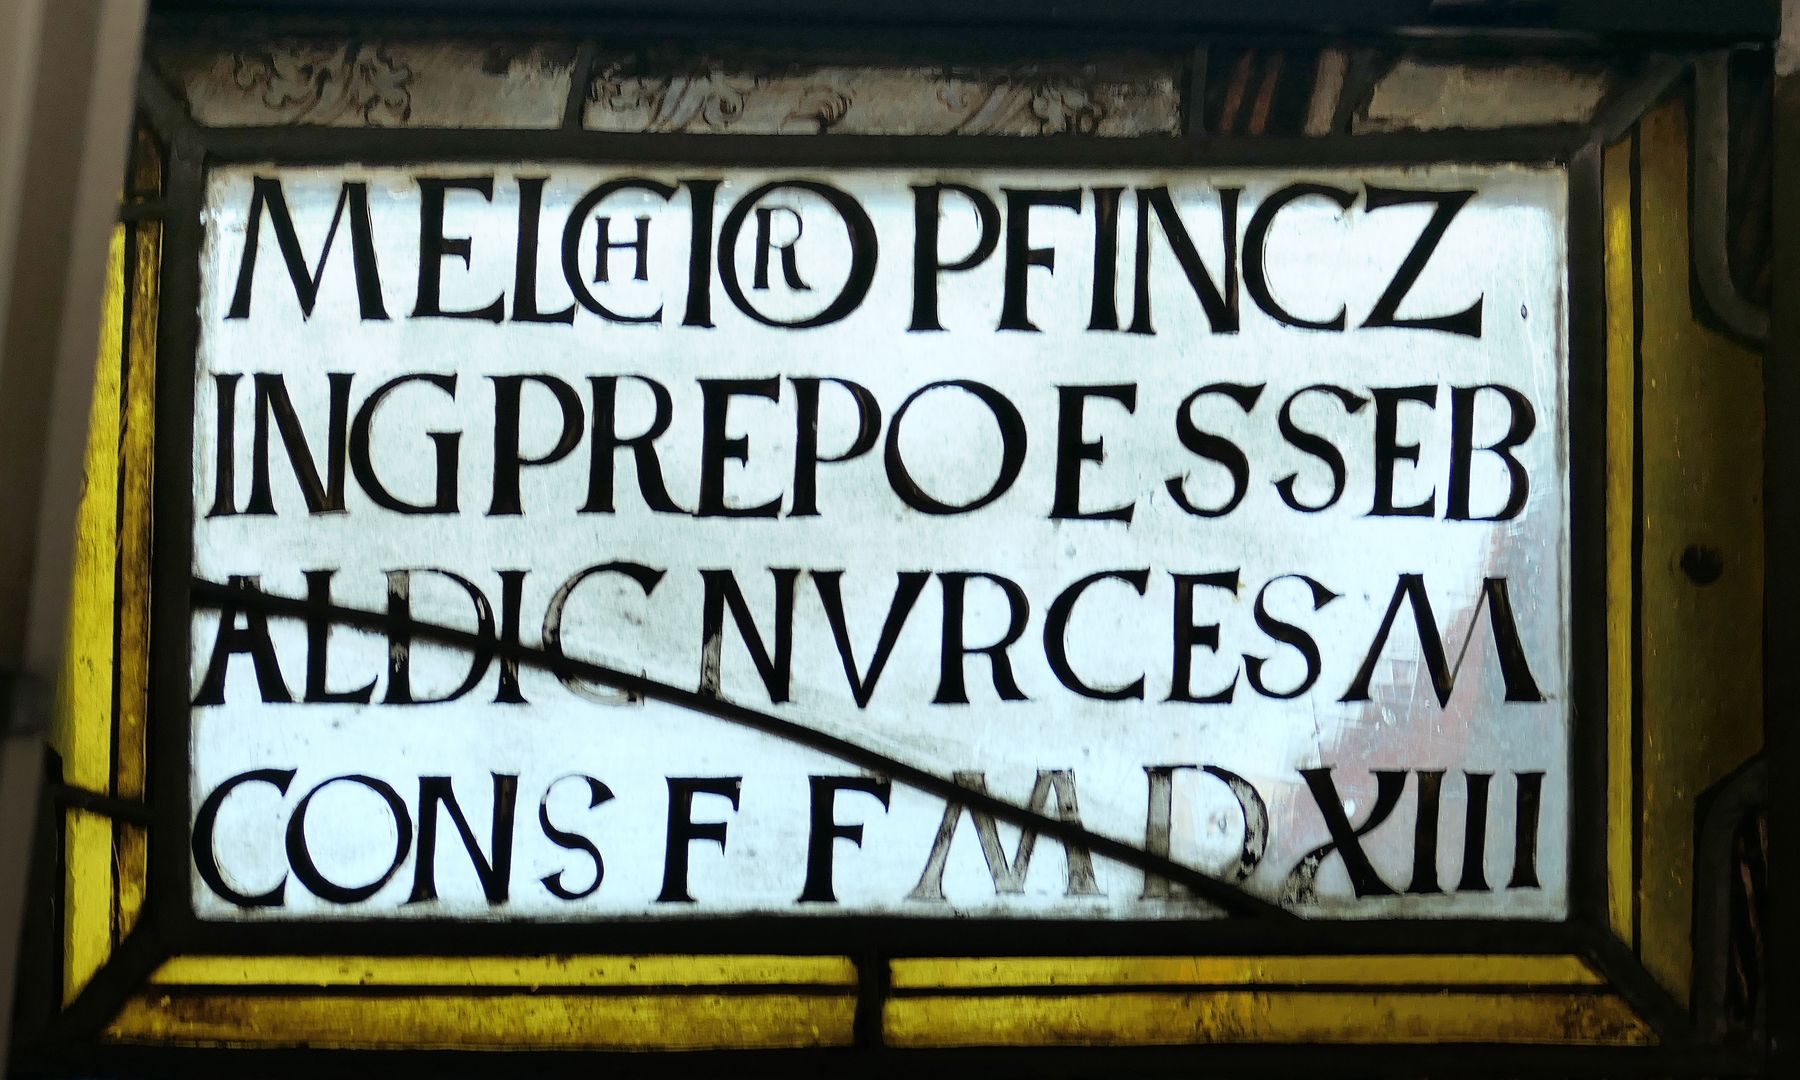 Fenster I 2 des Sebalder Chörleins / Pfinzingfenster Inschrift über Melchior Pfinzing